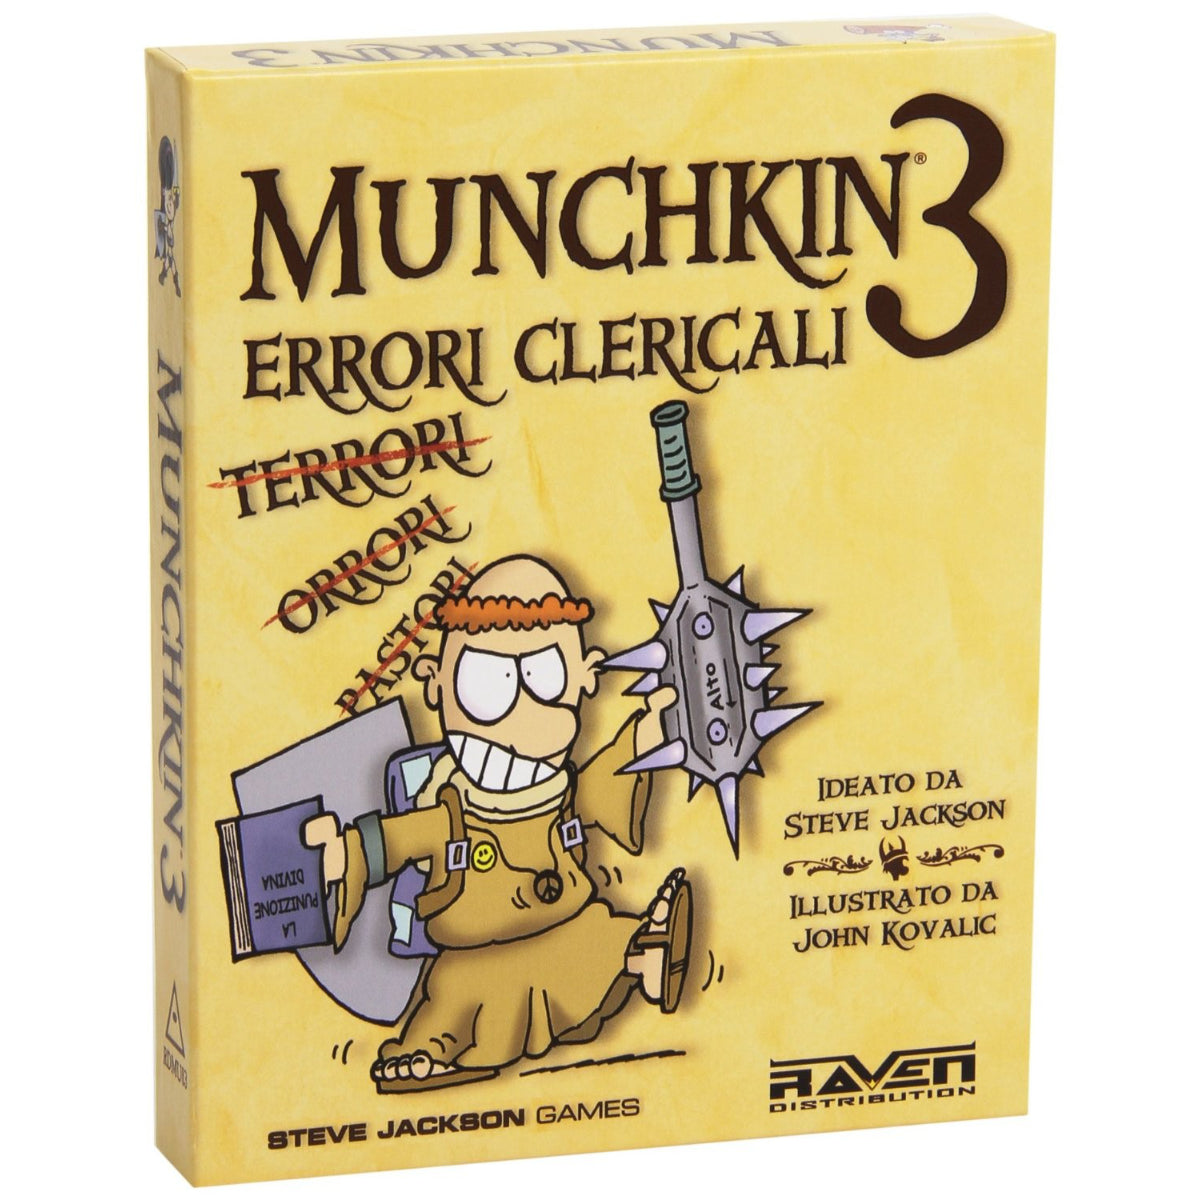 Munchkin 3 Errori Clericali